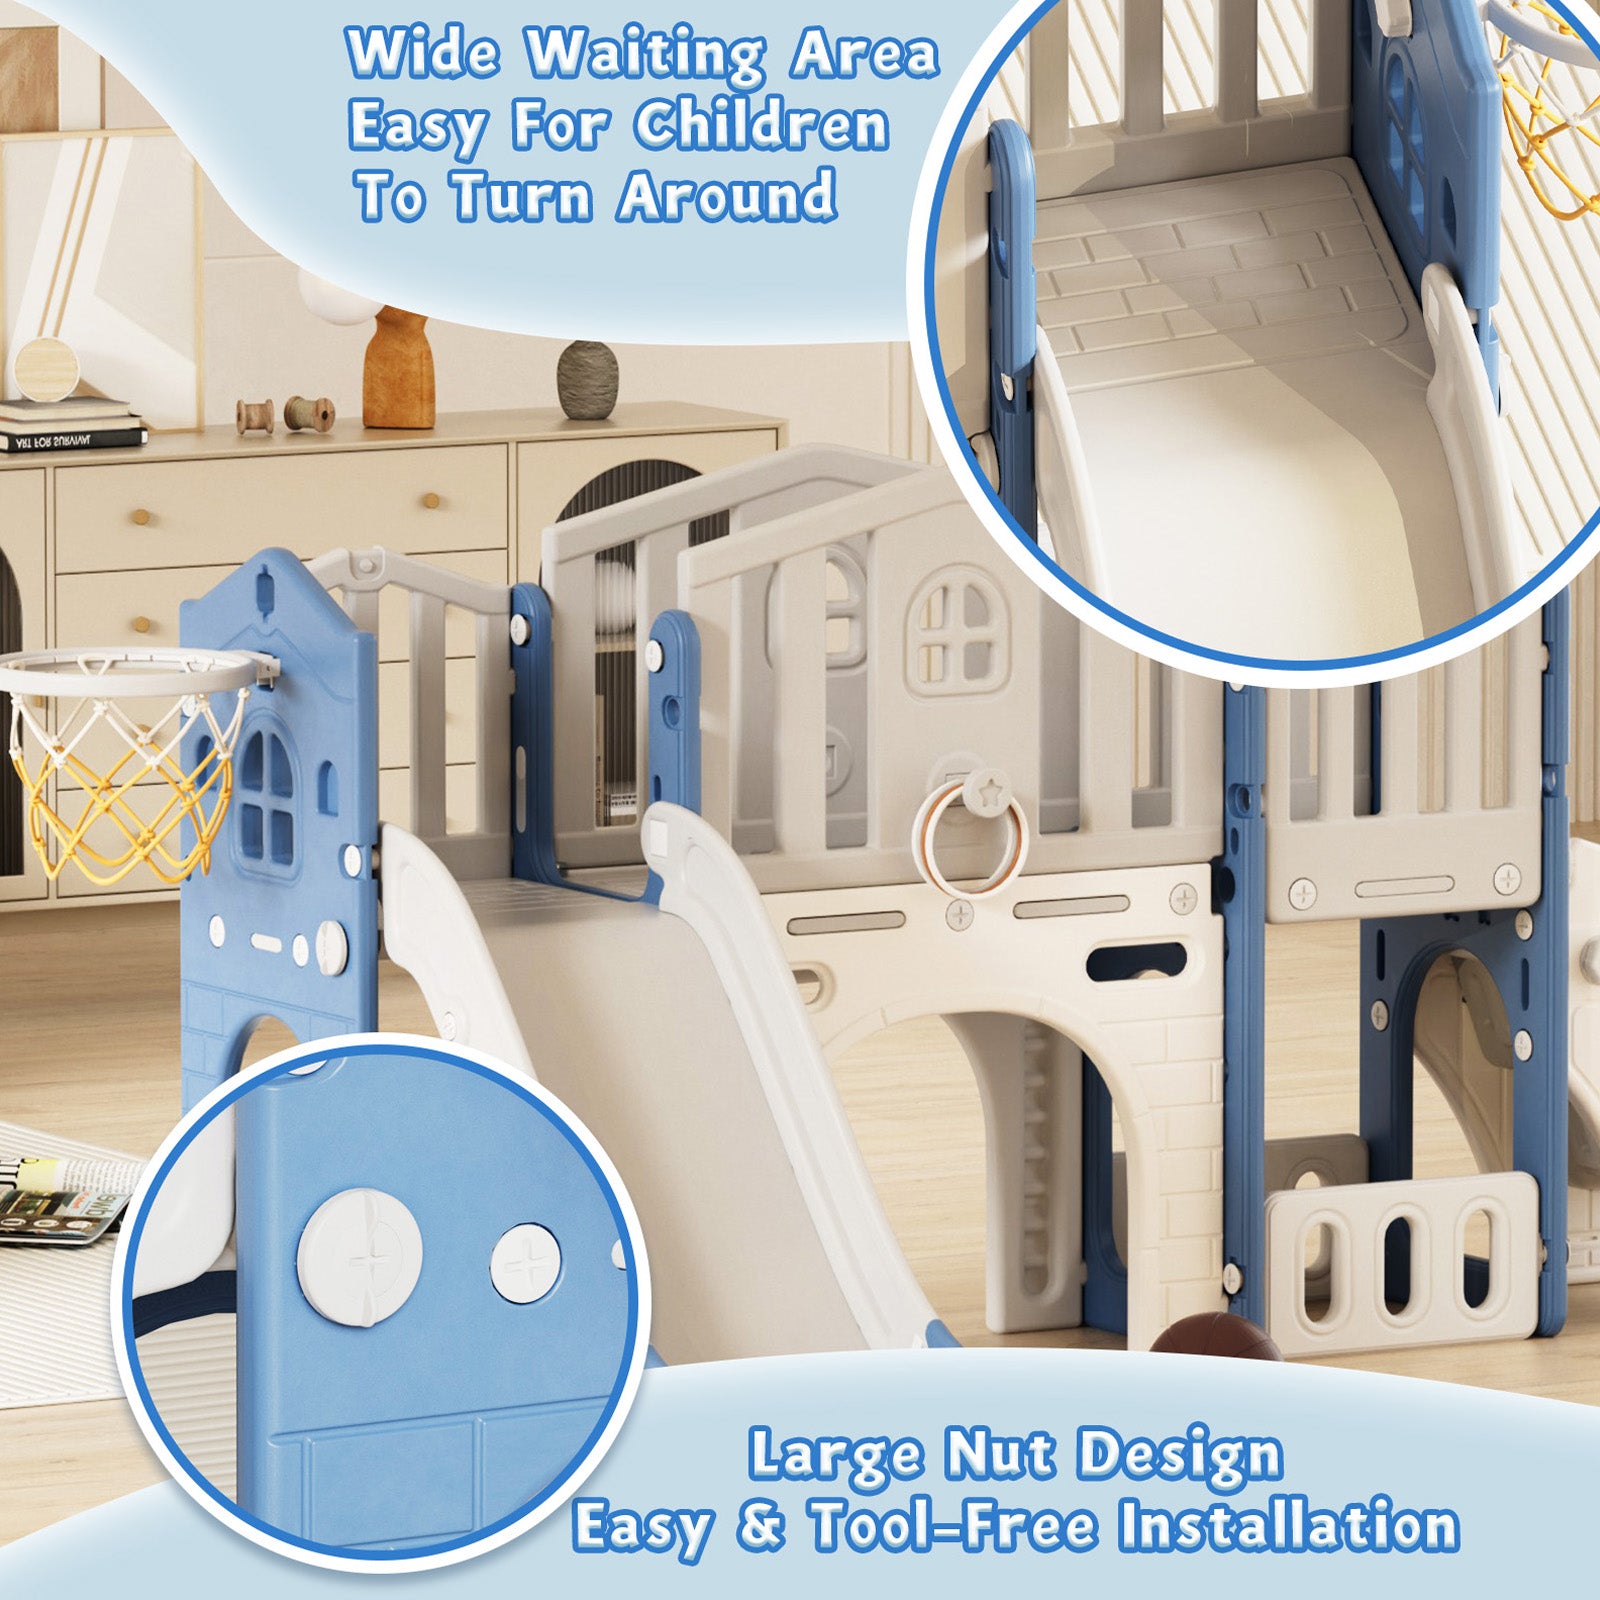 XJD 8 in 1 Toddler Slide Set Indoor Outdoor Plastic Freestanding Slide, Blue&Gray